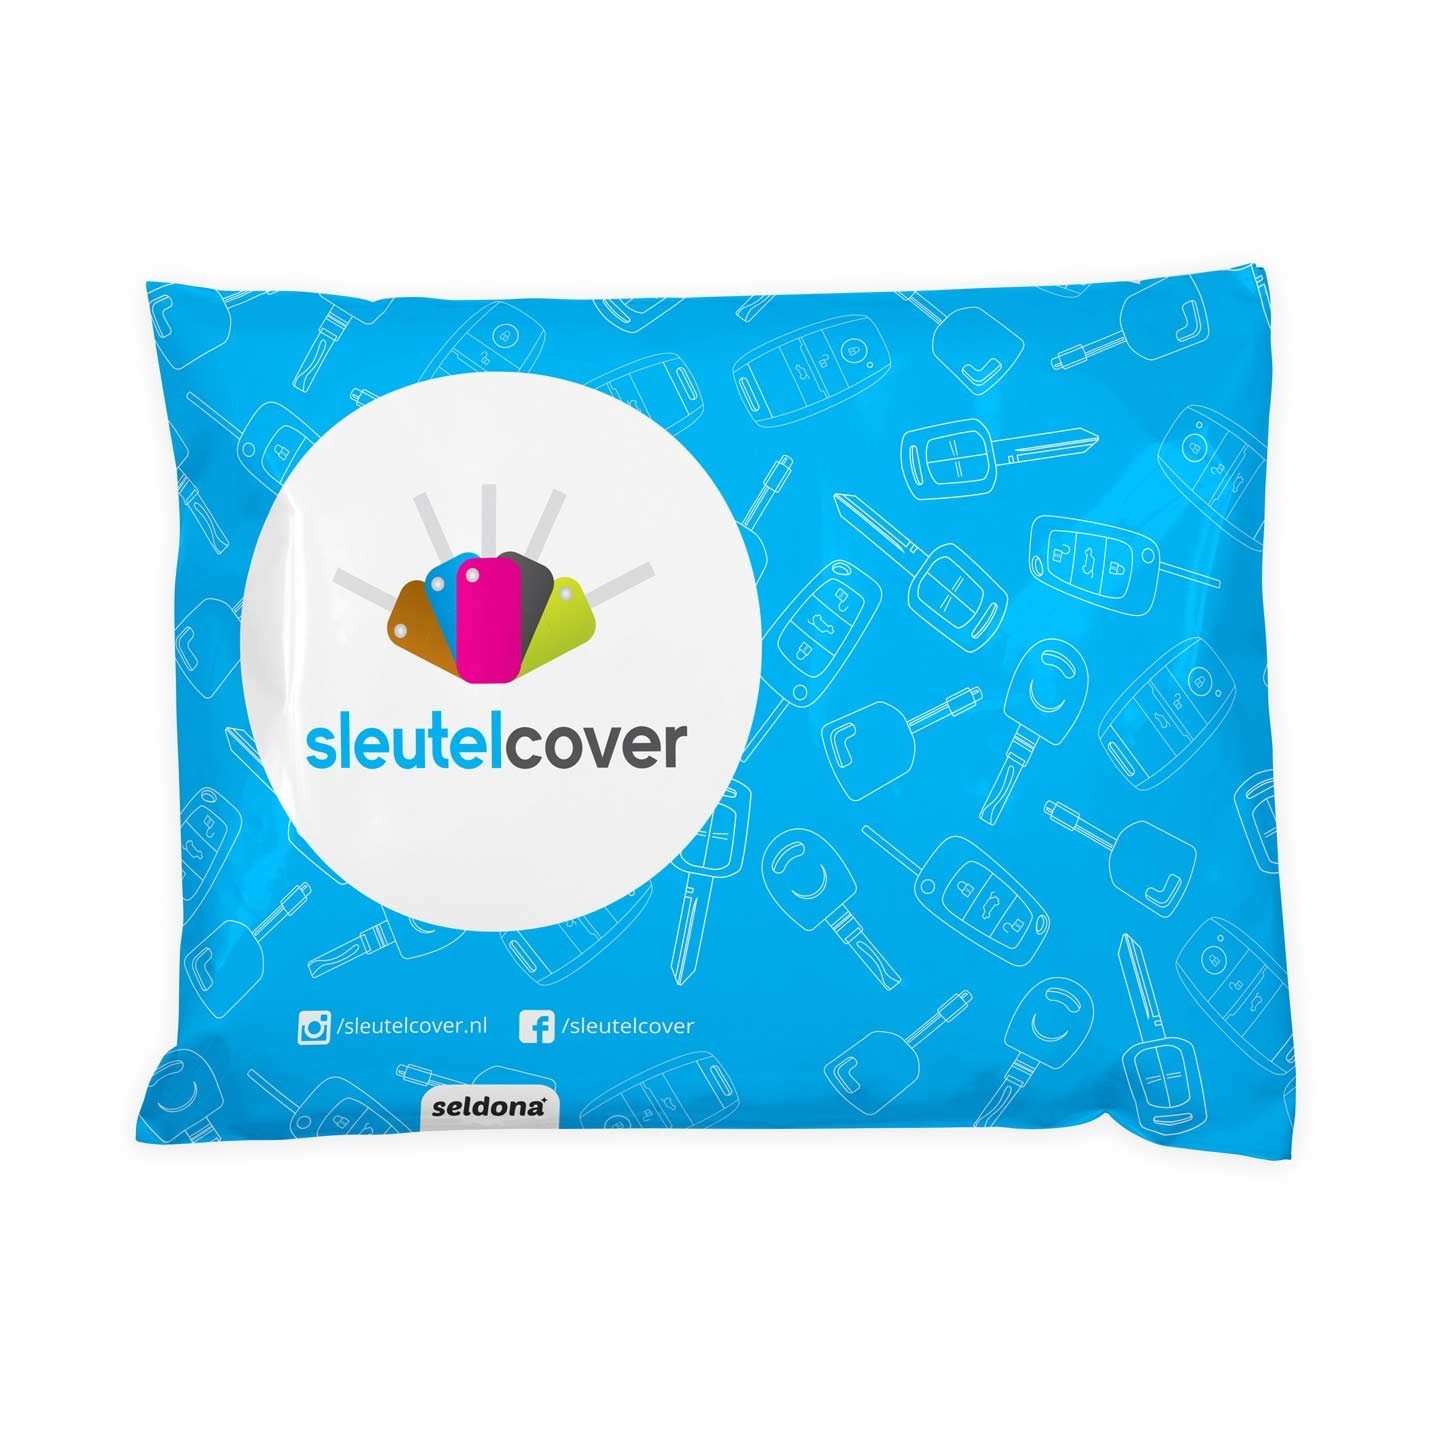 Skoda SleutelCover - Donker Blauw / Silicone sleutelhoesje / beschermhoesje autosleutel